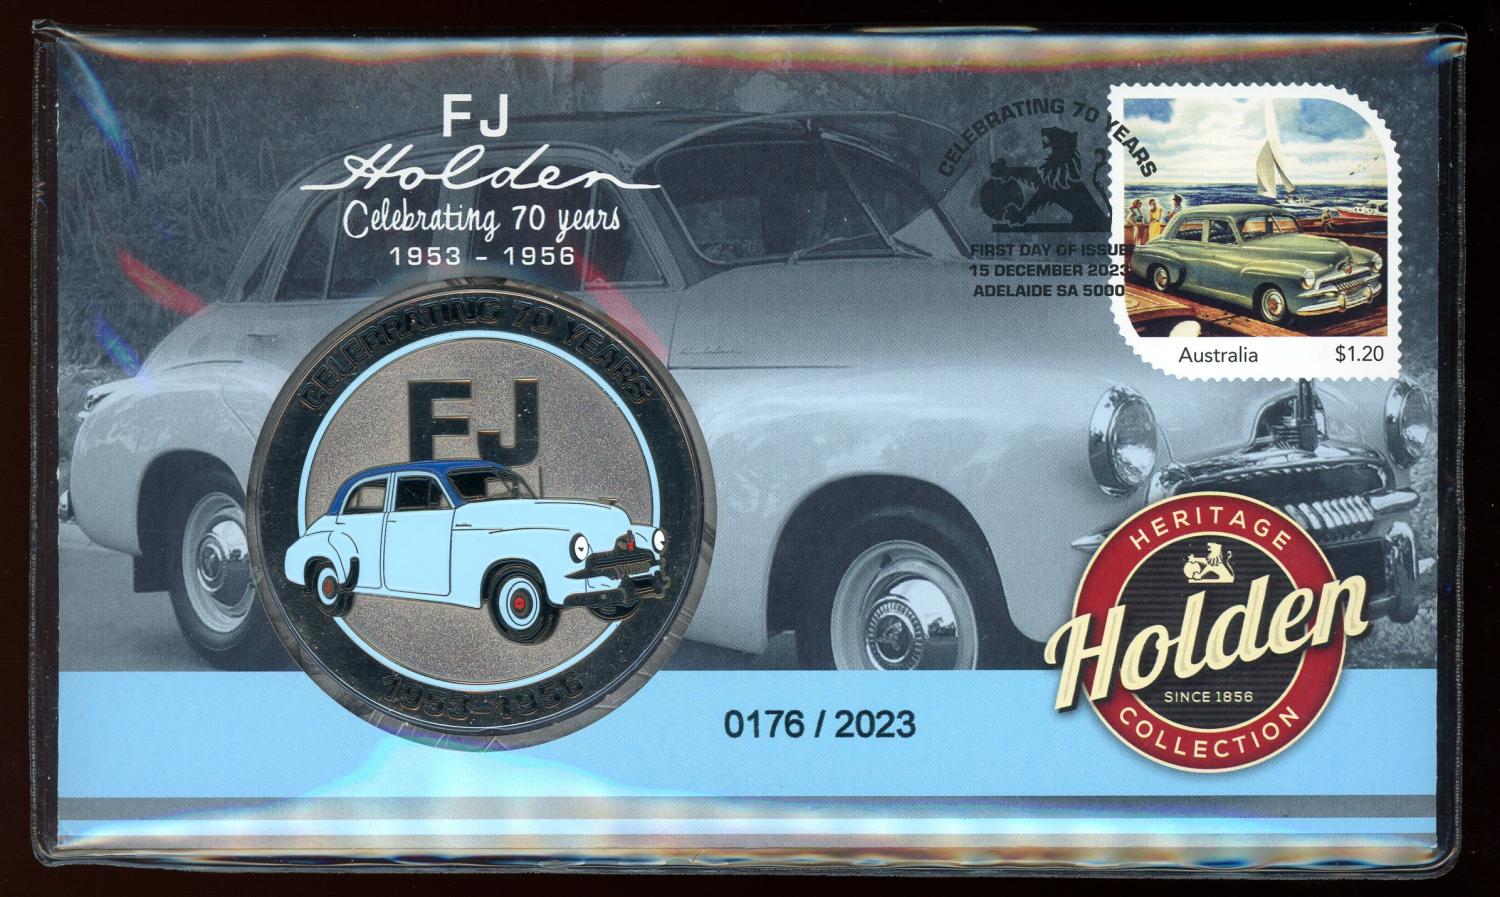 Thumbnail for 2023 FJ Holden Celebrating 70 Years 1953-1956 Postal Medallion Cover